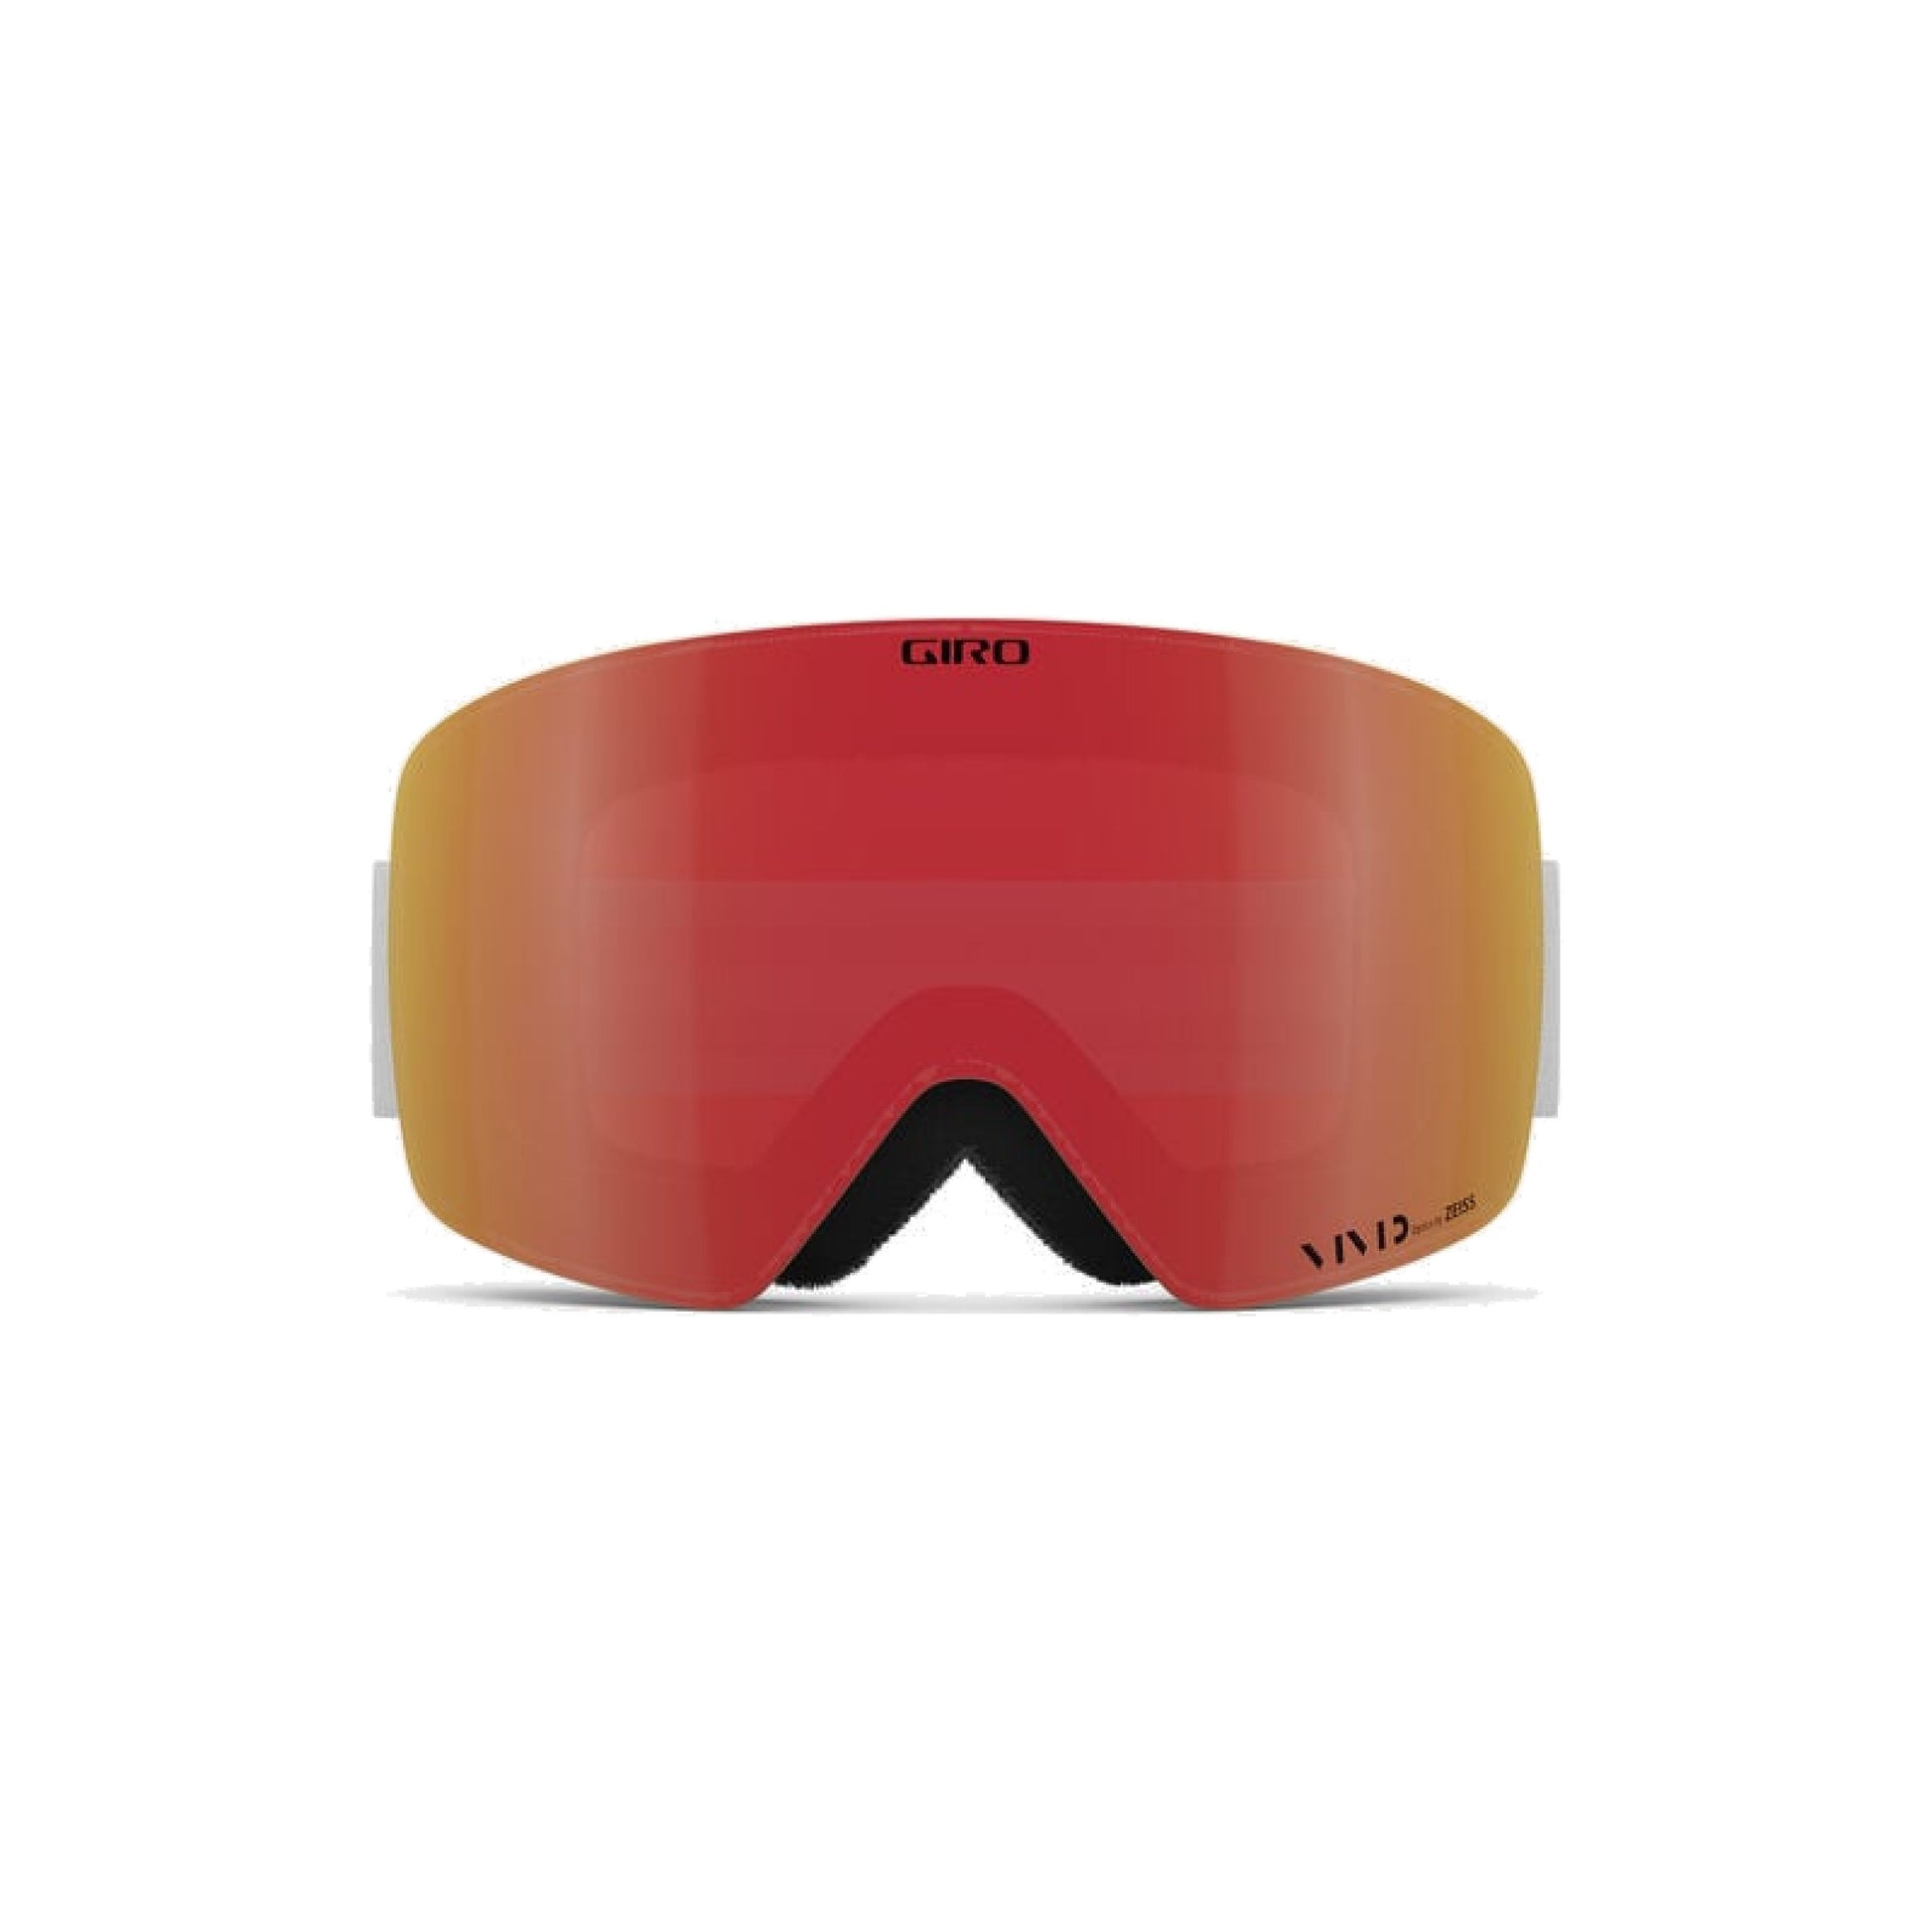 Giro Contour Snow Goggles White Wordmark / Vivid Ember Snow Goggles